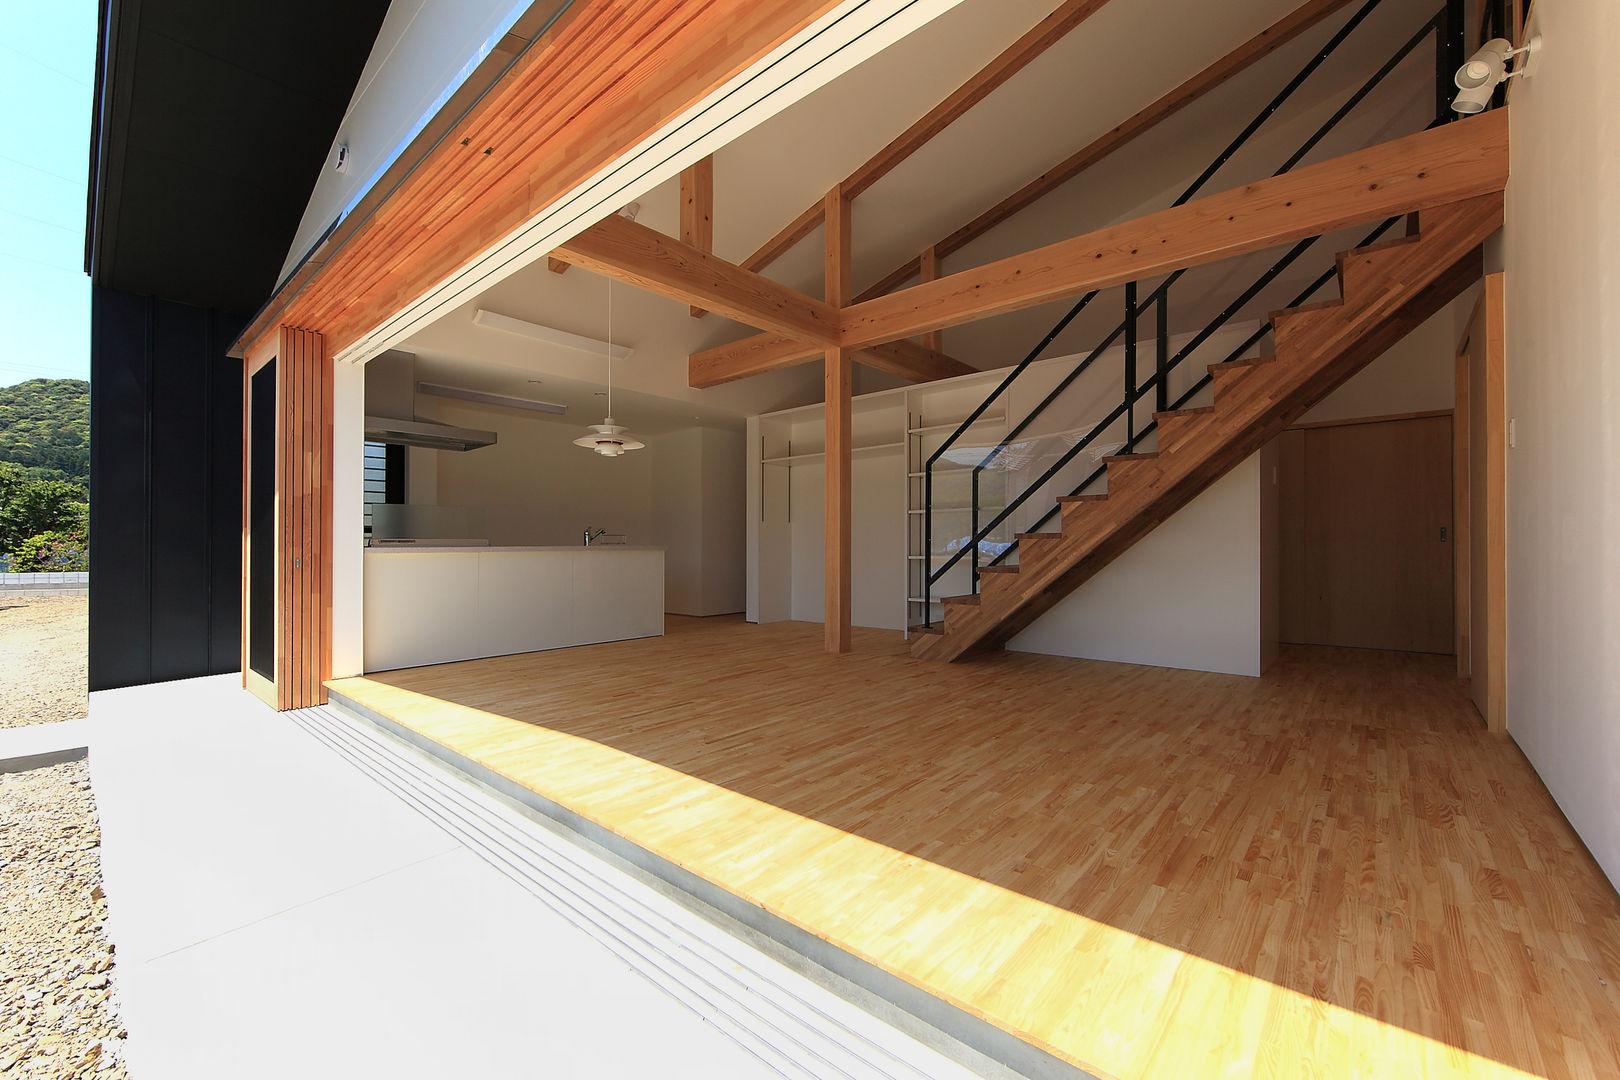 House-S【 ヒトツナガリノイエ 】, bound-design bound-design Casas modernas